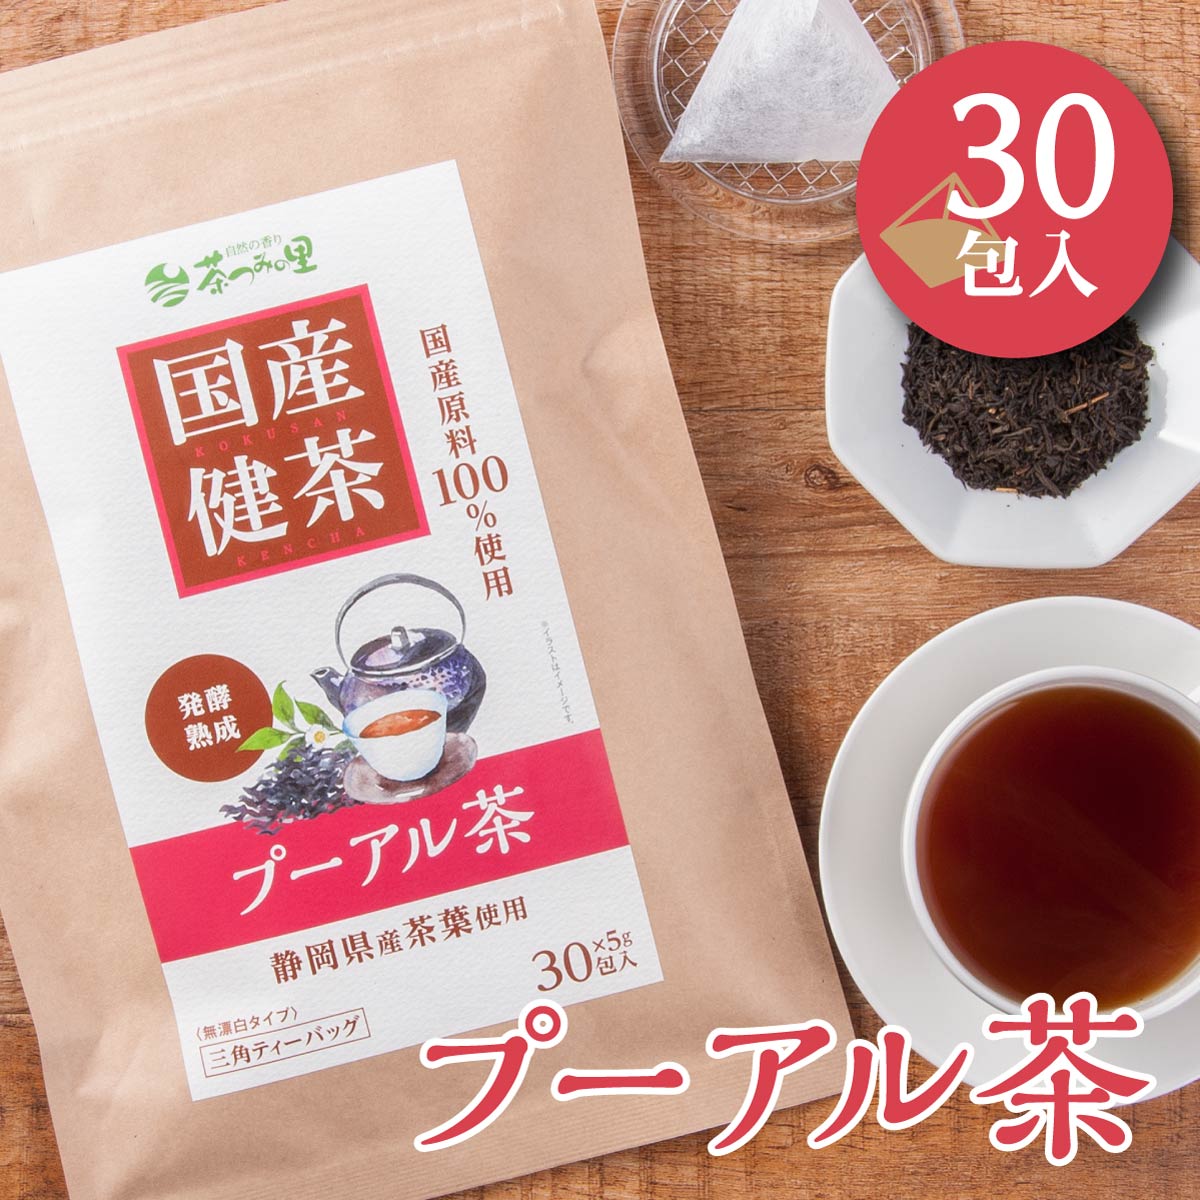 国産 プーアル茶 5g×30包入 ティーバッグ プーアール茶 送料無料 健康茶 プーアル ティーパック